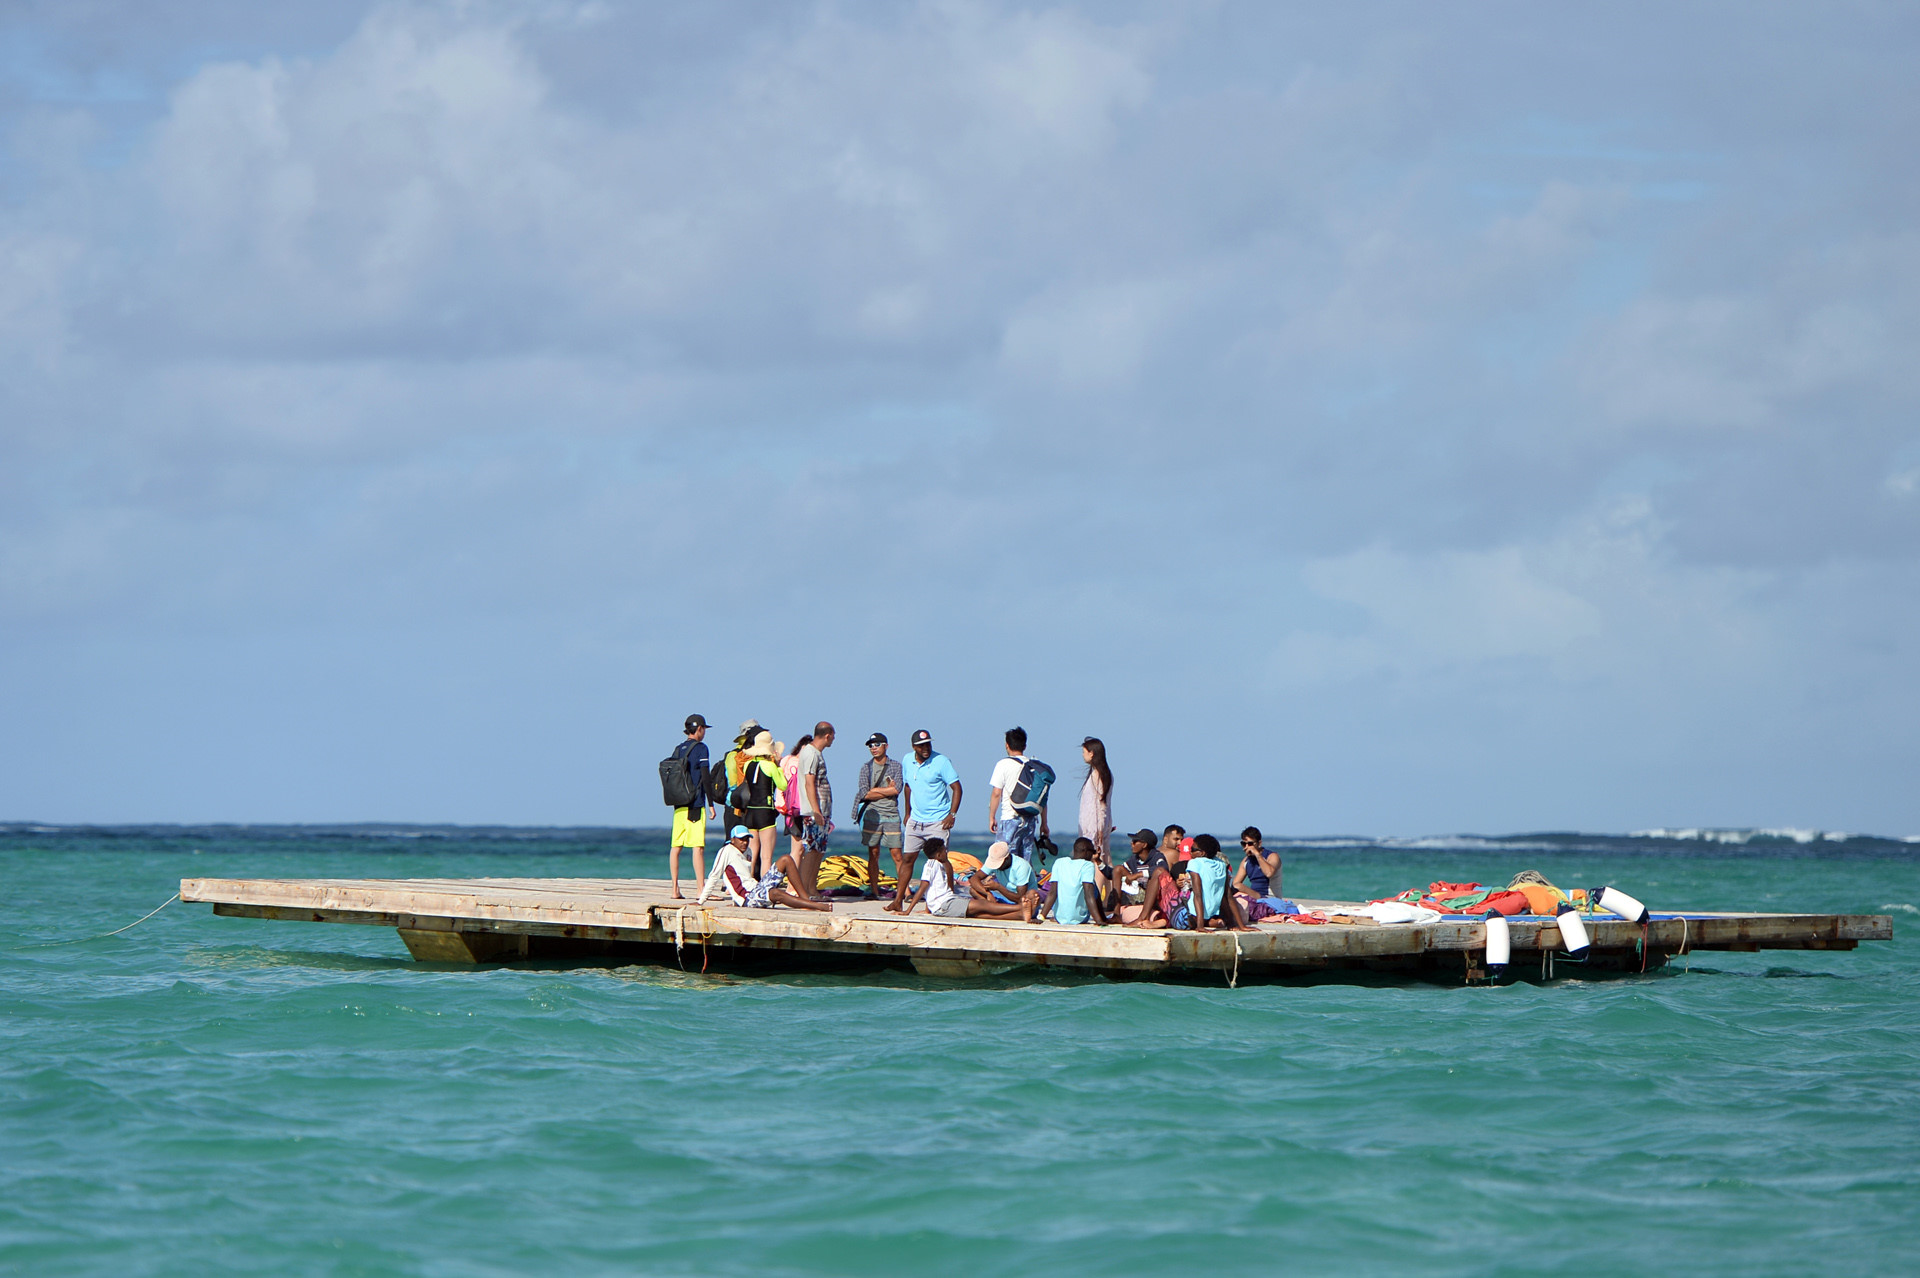 Chiếc bè gỗ rộng khoảng 100 m2 nằm giữa biển cách bờ chừng 2 km là địa điểm chơi môn dù lượn. 